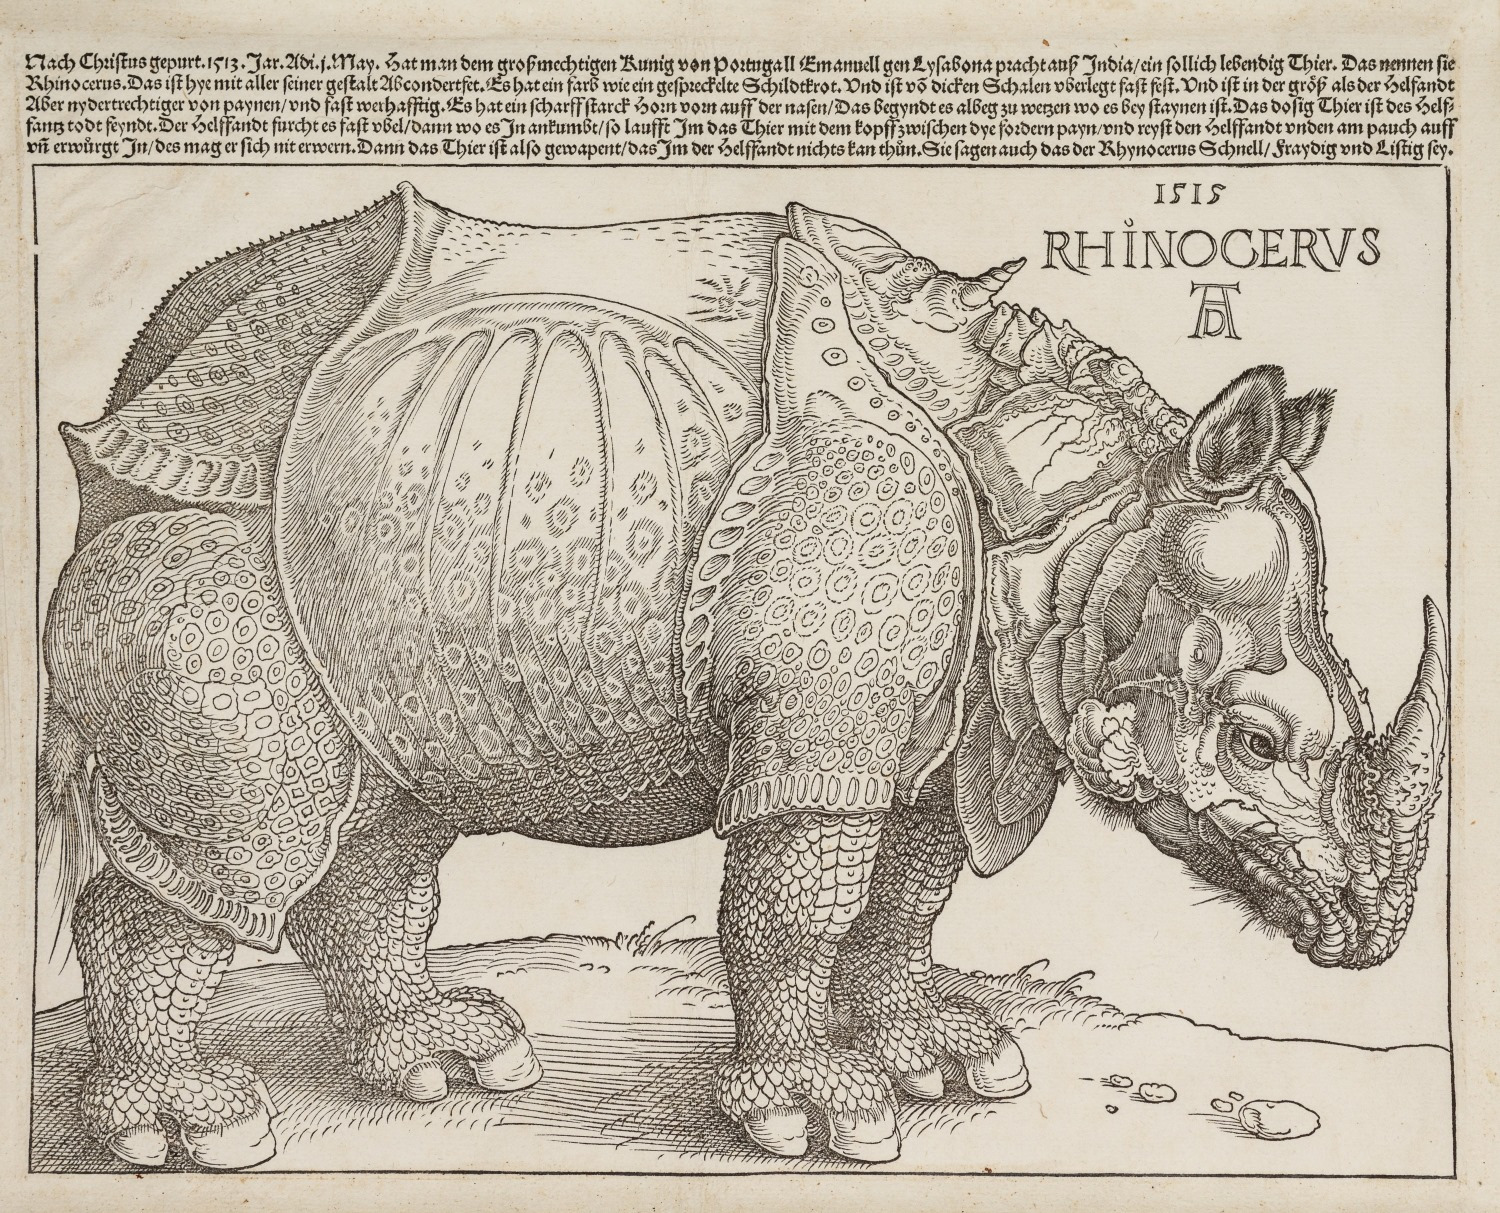 The Rhinoceros (1515) by Albrecht Dürer. Holzschnitt Kunstsammlungen der Fürsten Waldburg-Wolfegg, Schloss Wolfegg Photo: Wynrich Zlomke